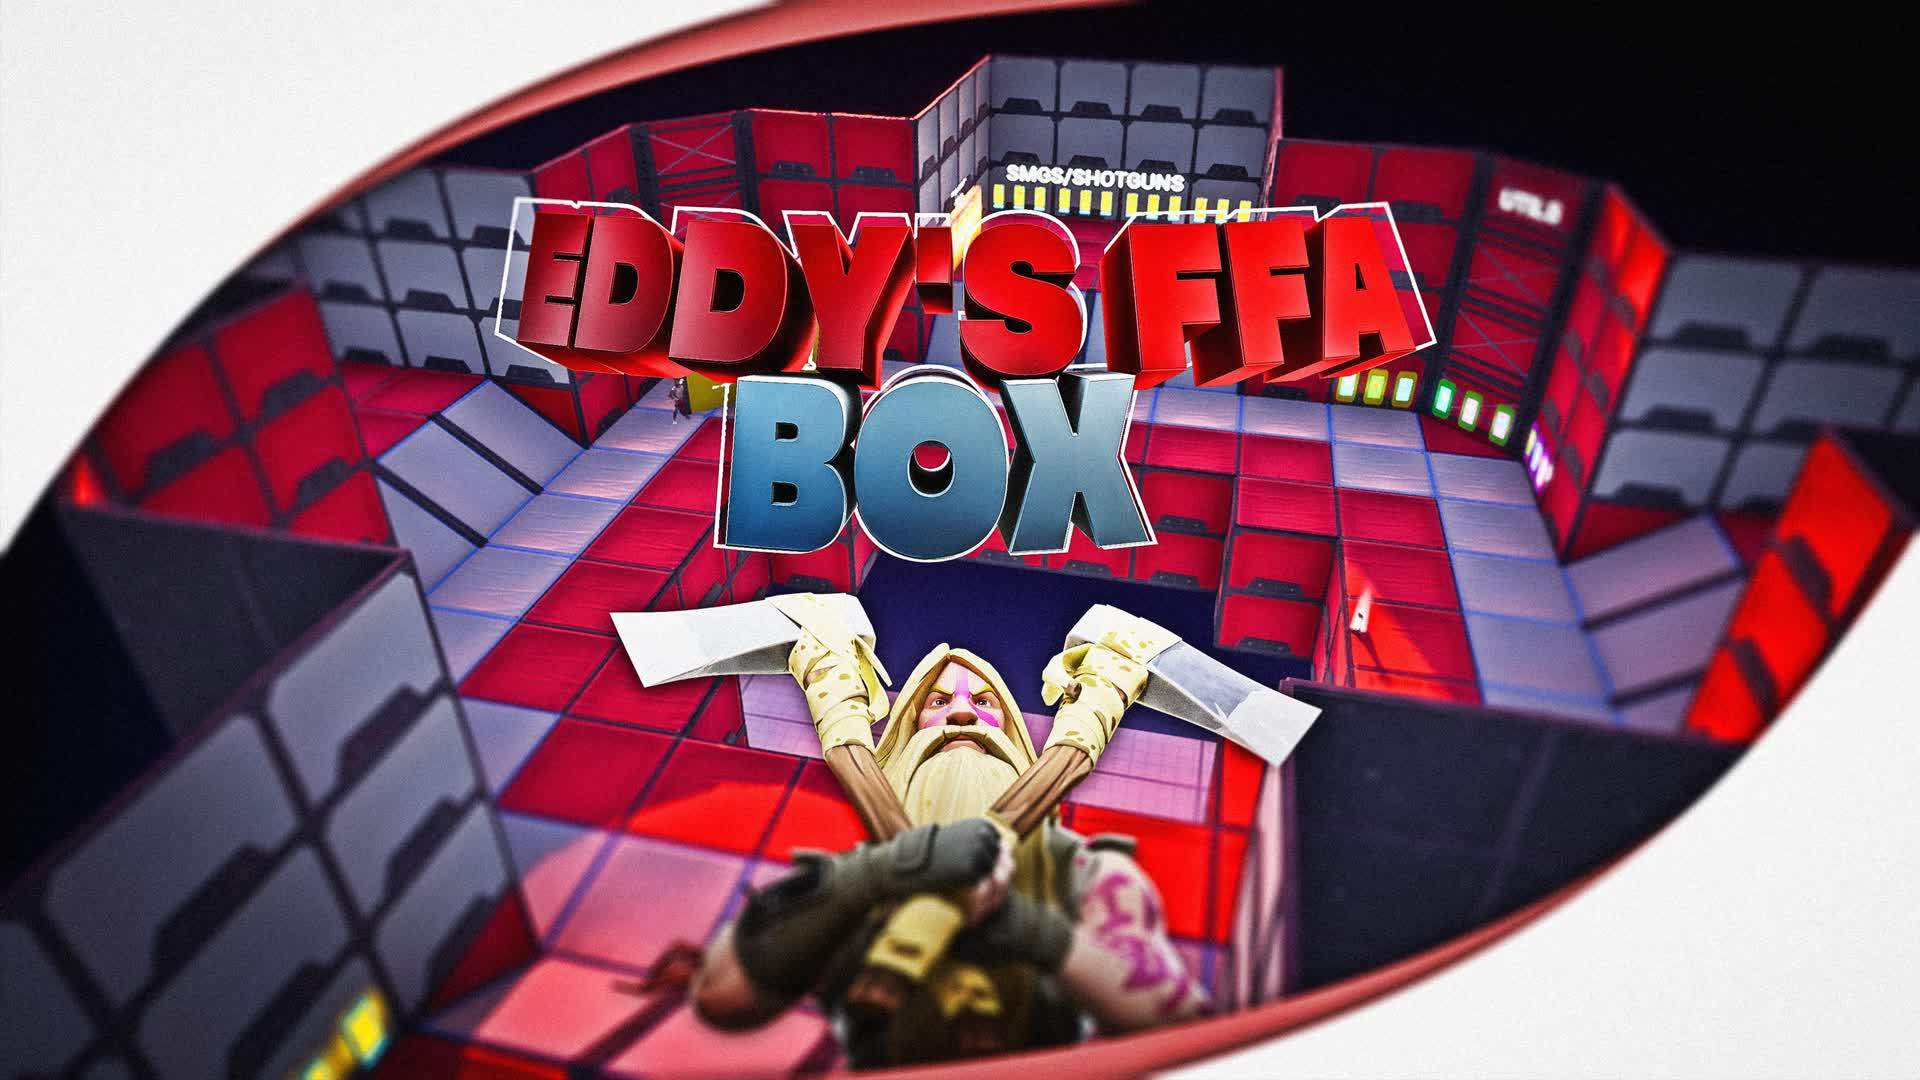 Eddy's FFA Box 2.0